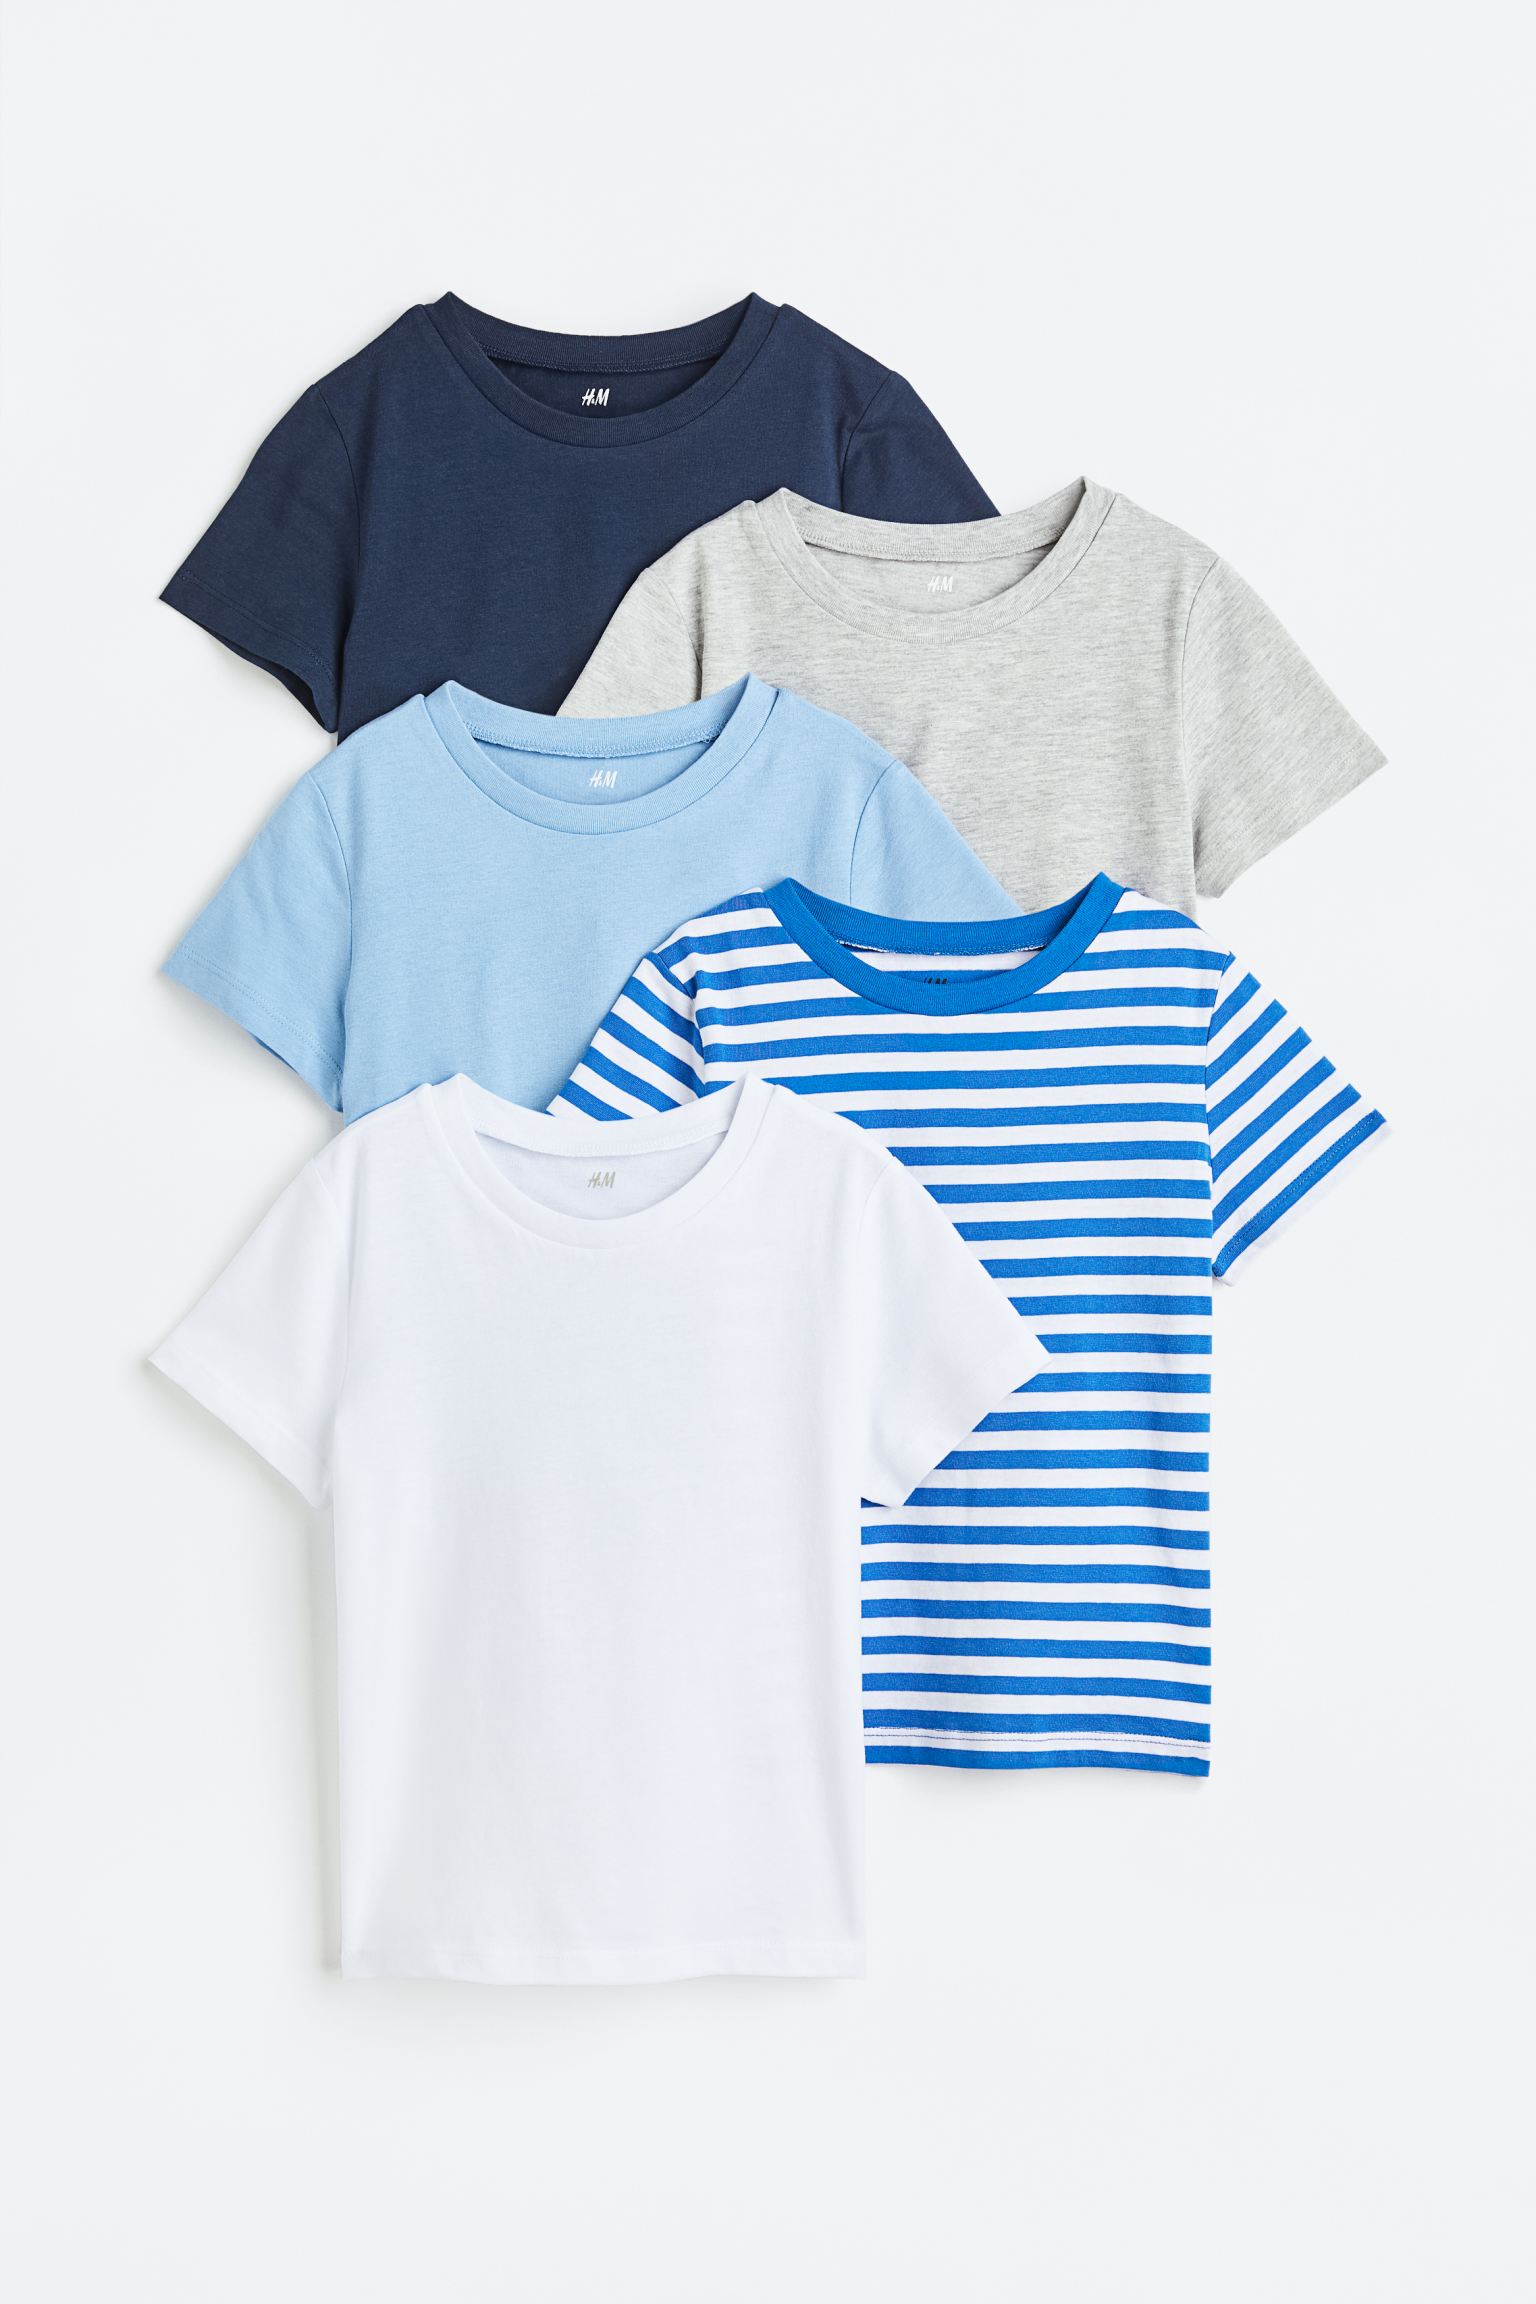 Хлопковая футболка, 5 шт. H&M, темно-синий/серый меланж цена и фото